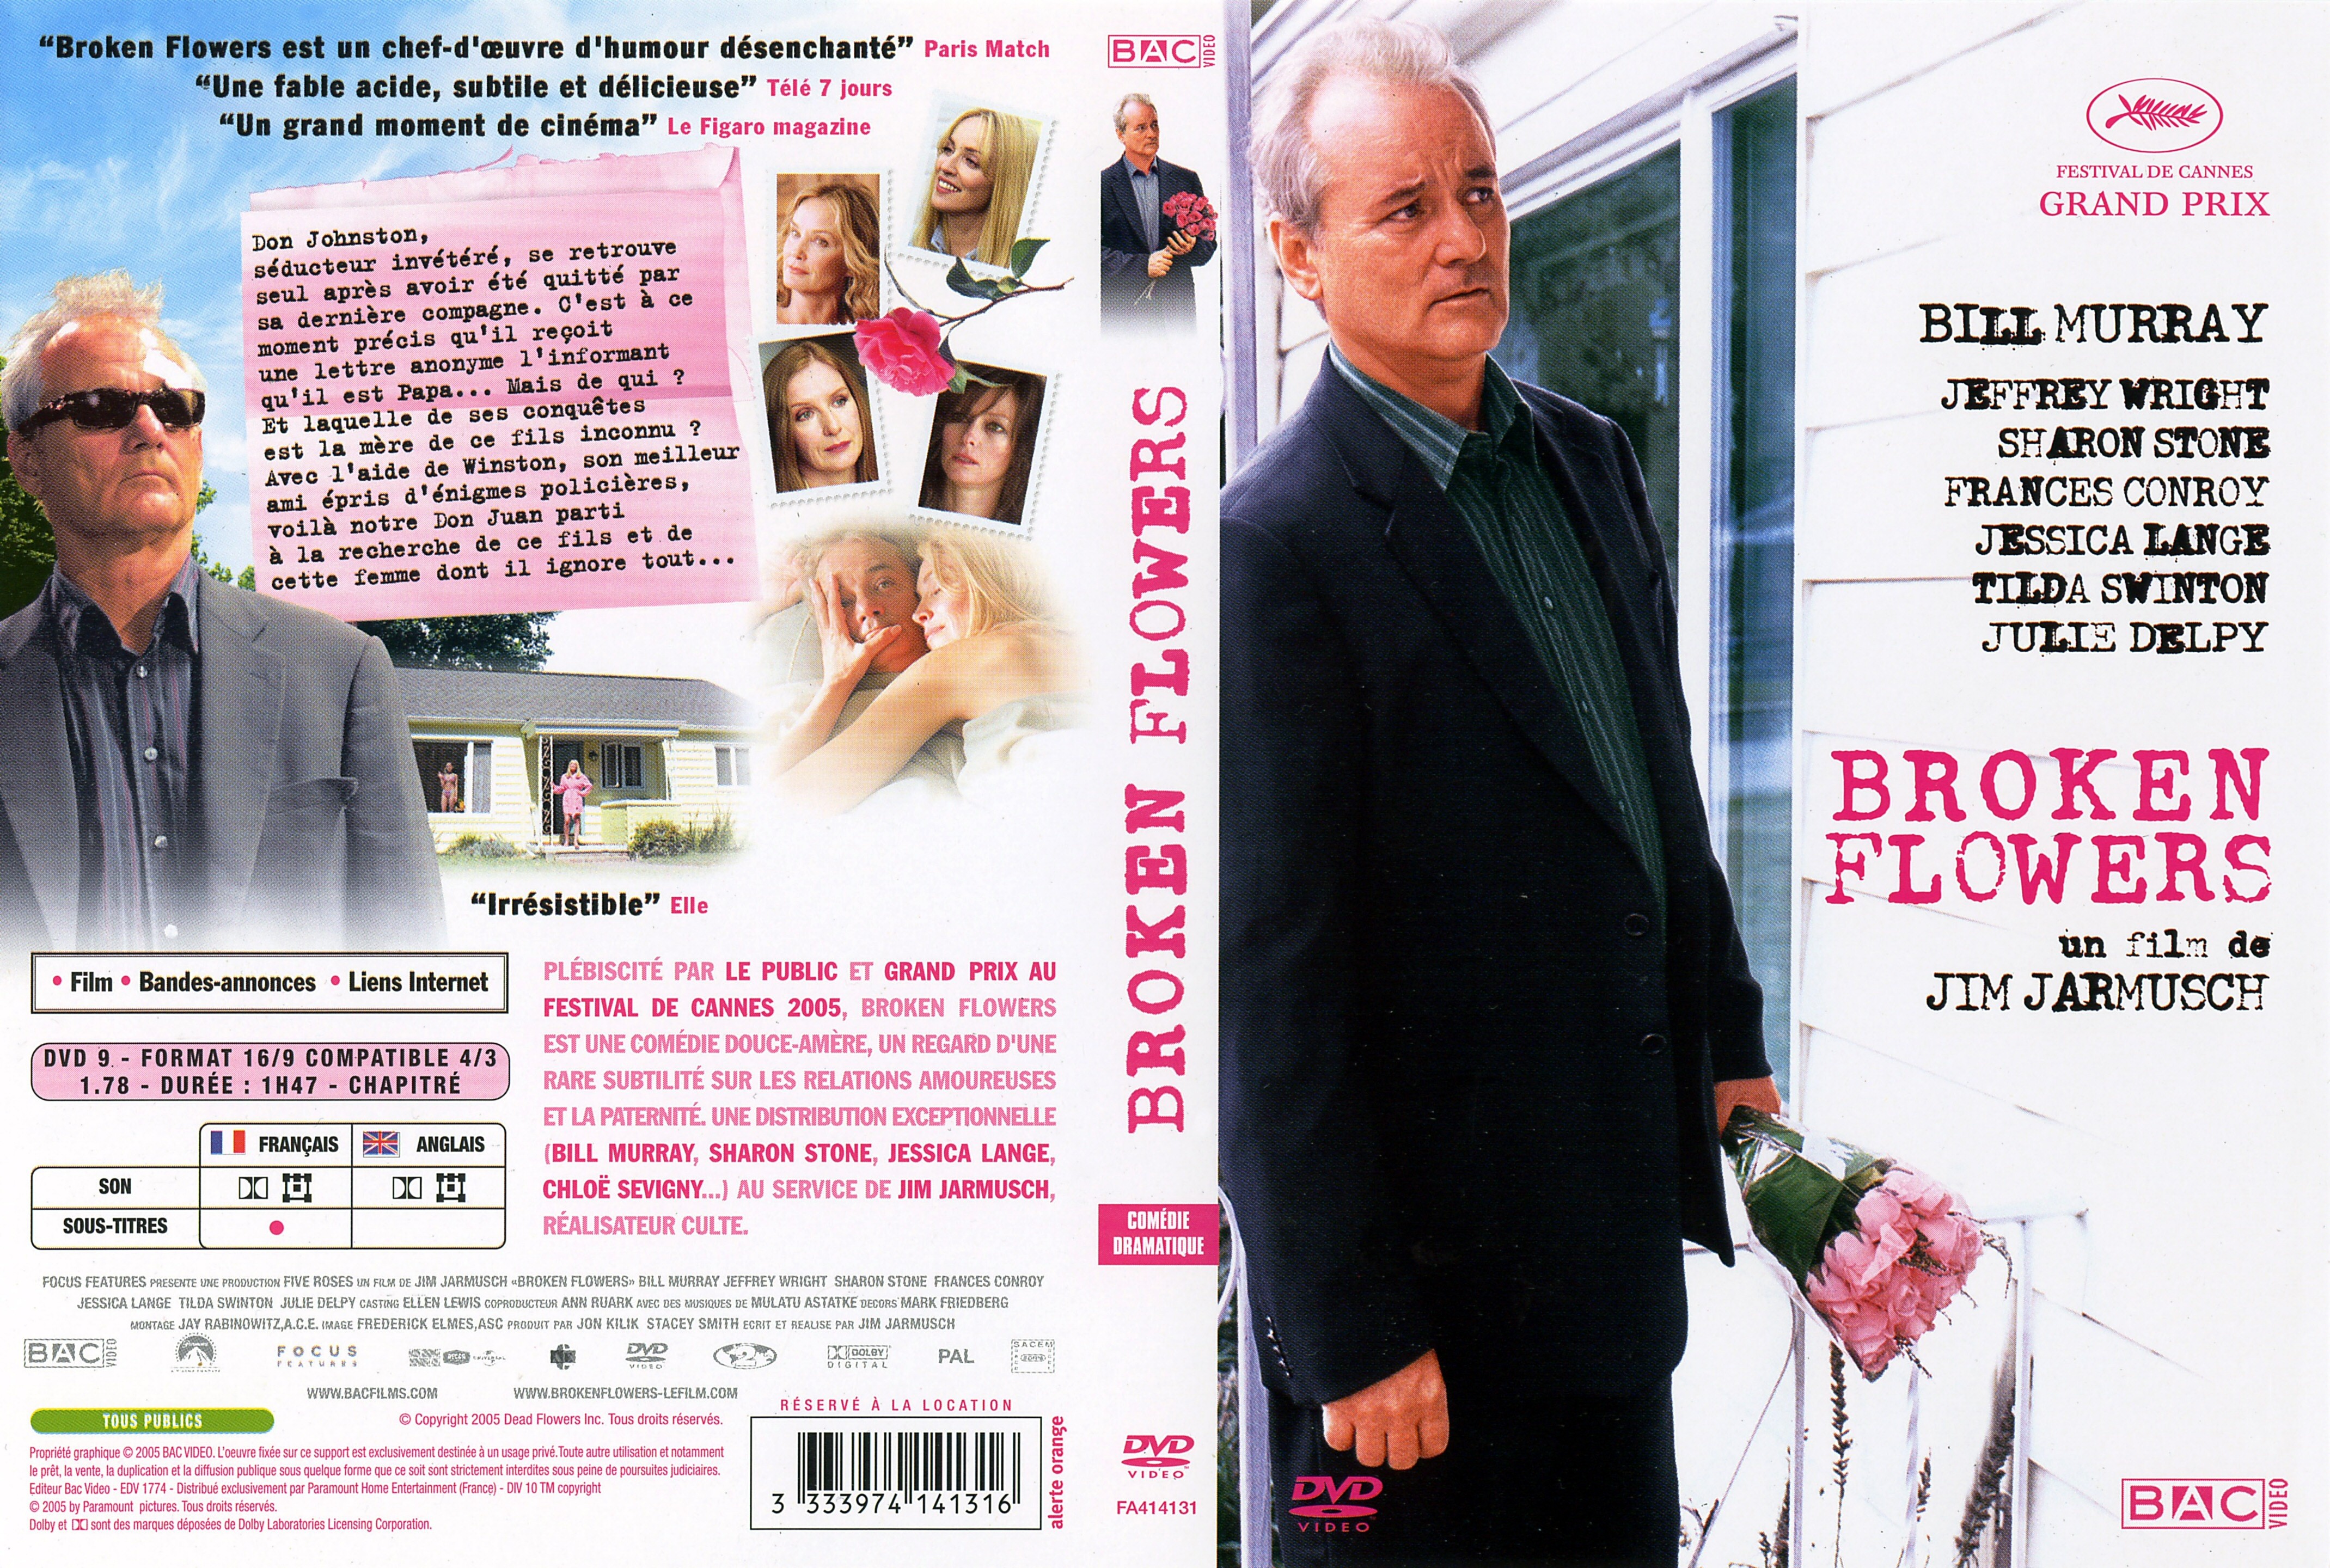 Jaquette DVD Broken Flowers v2